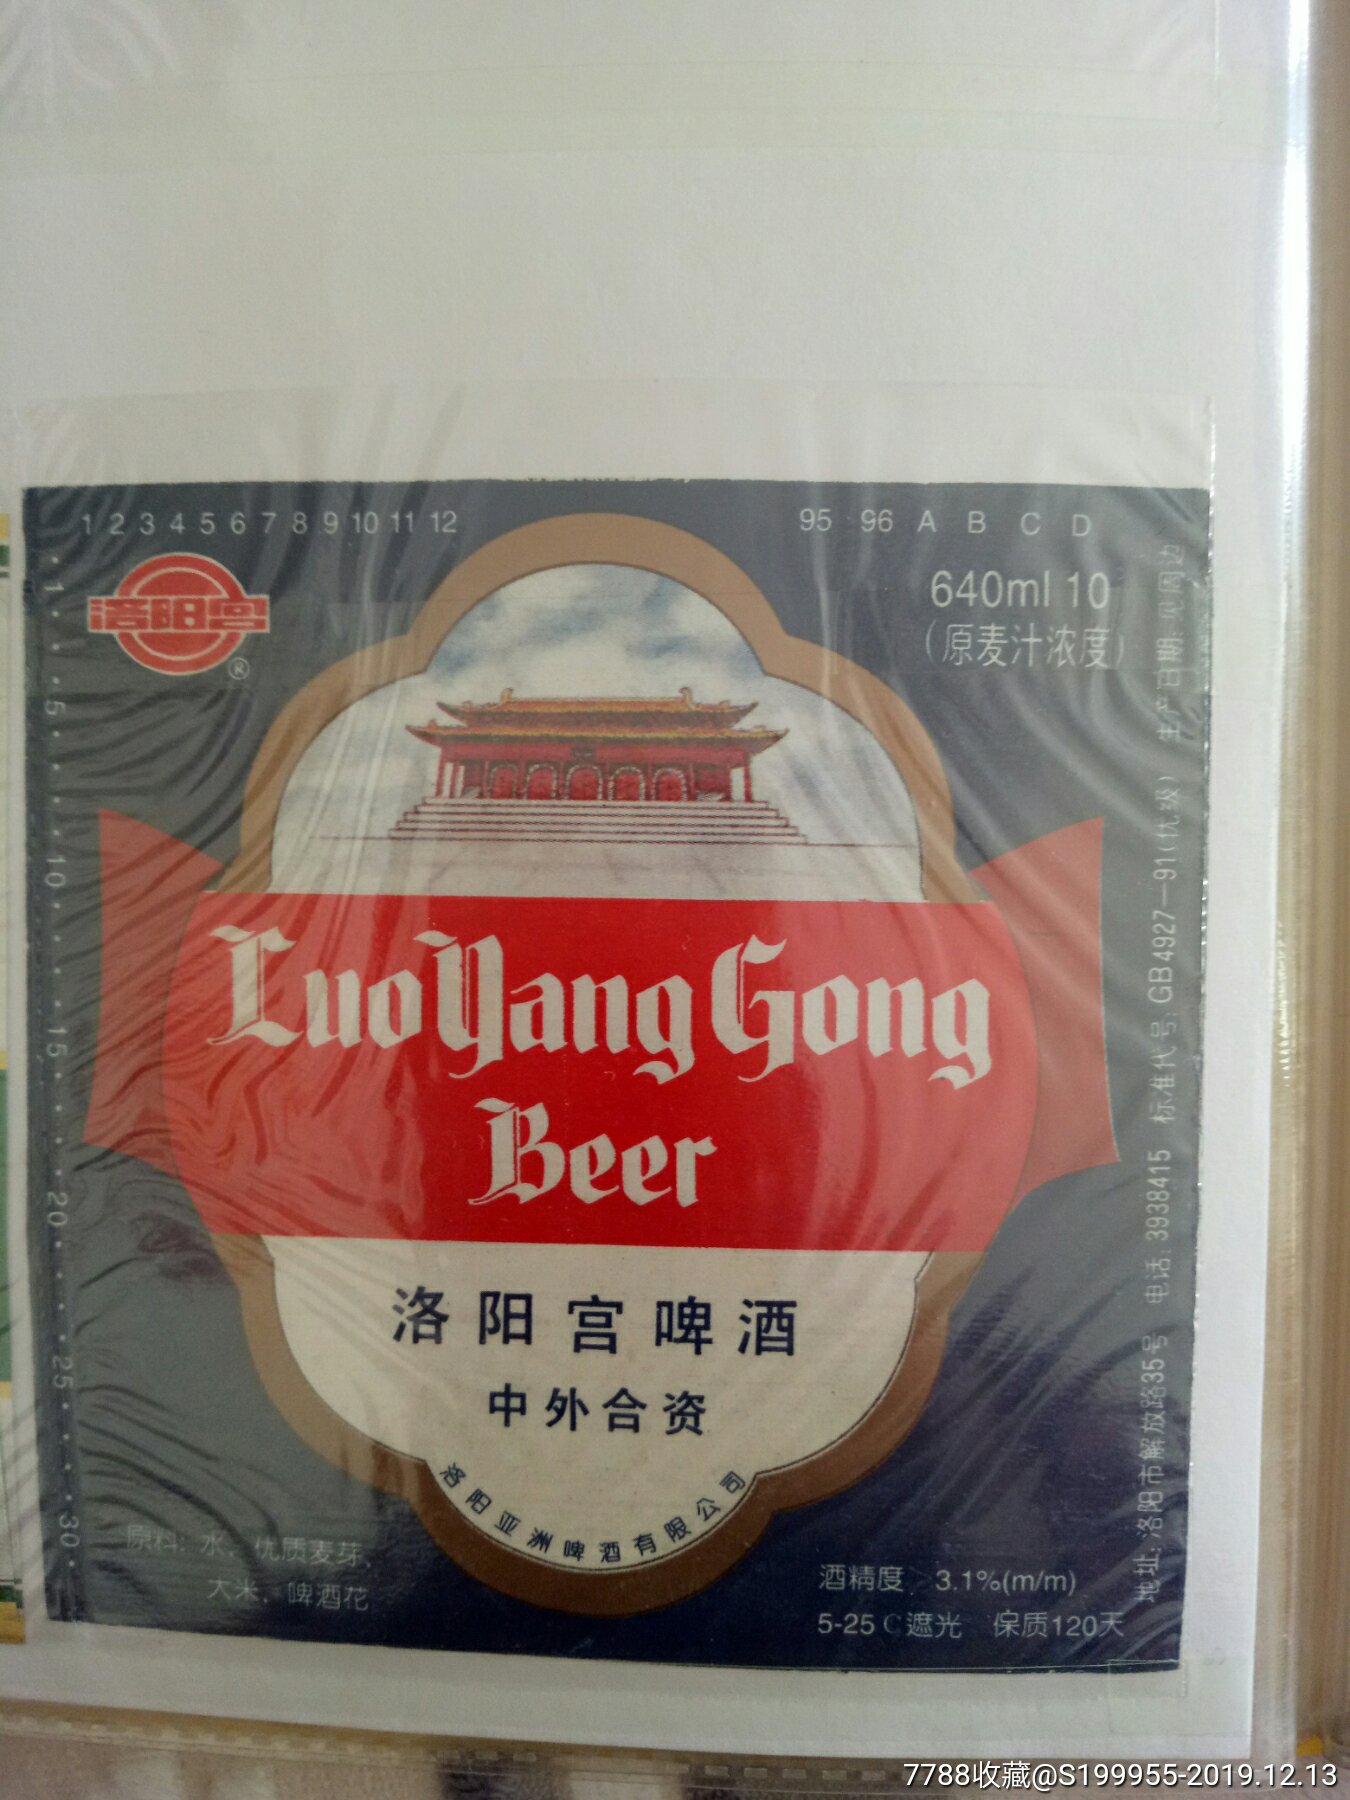 洛阳宫啤酒